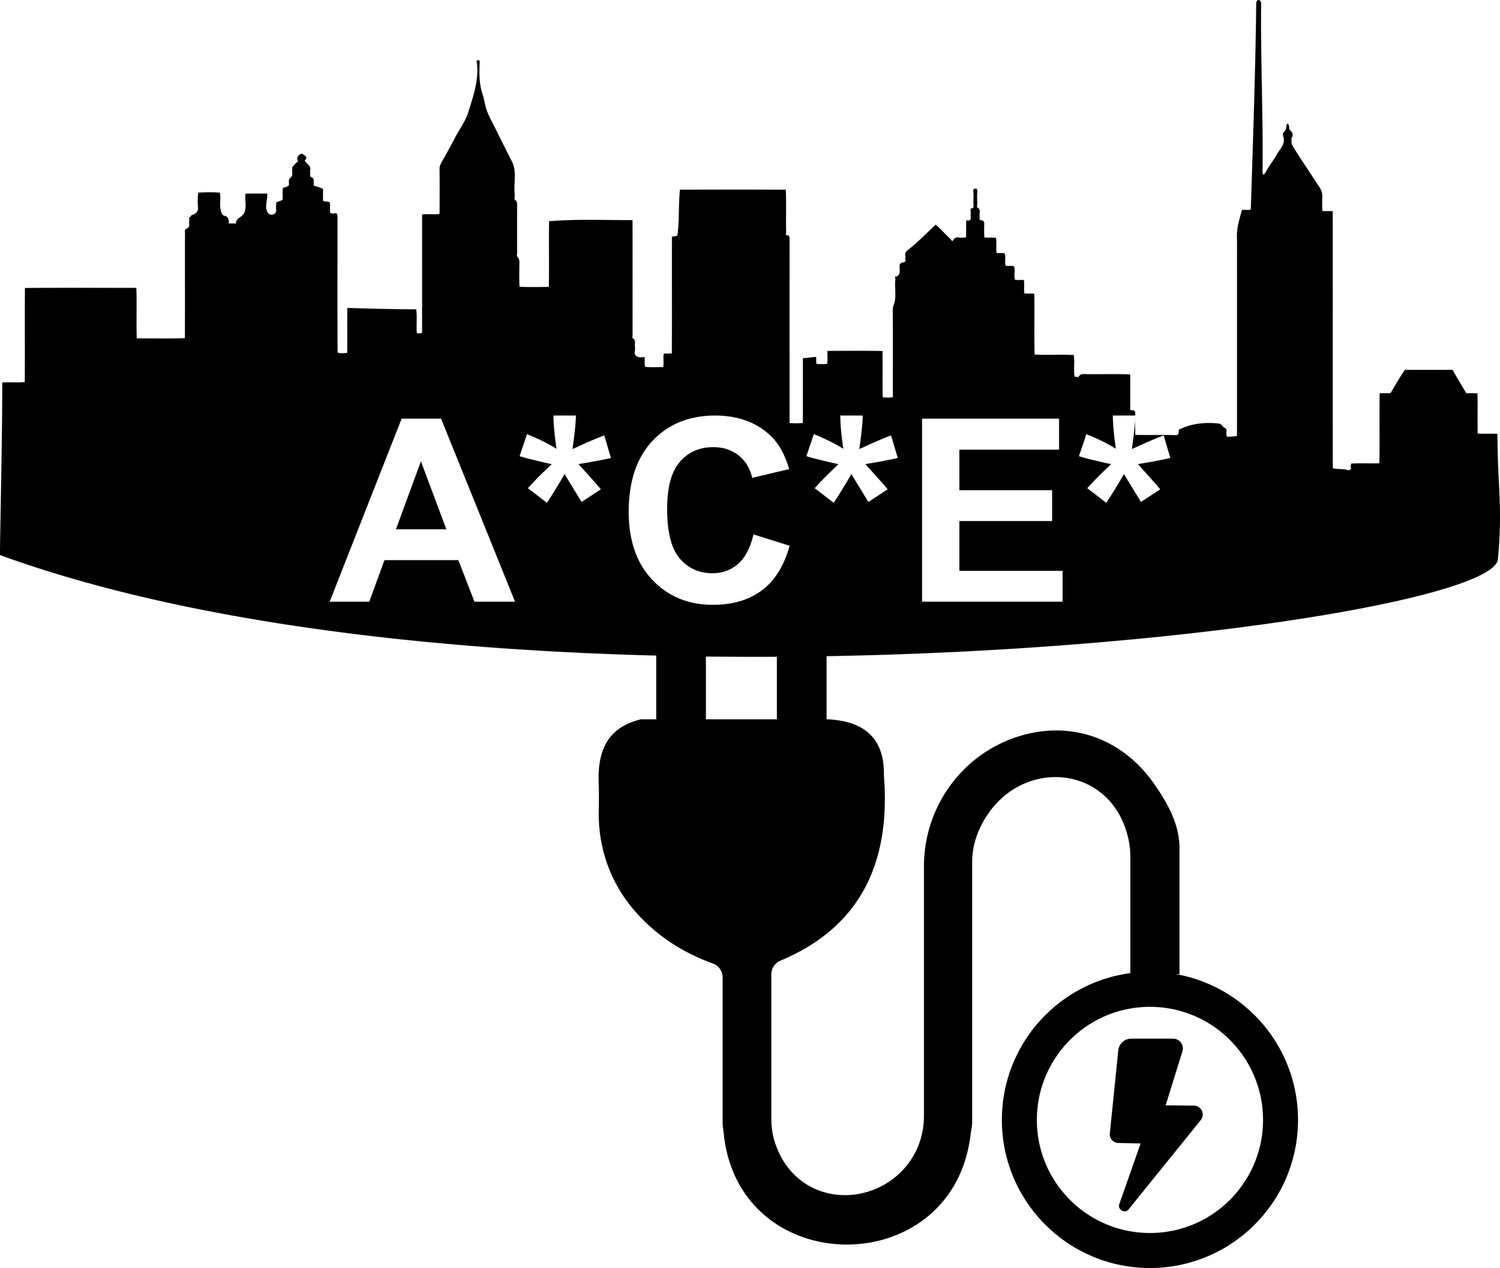 ACE Services